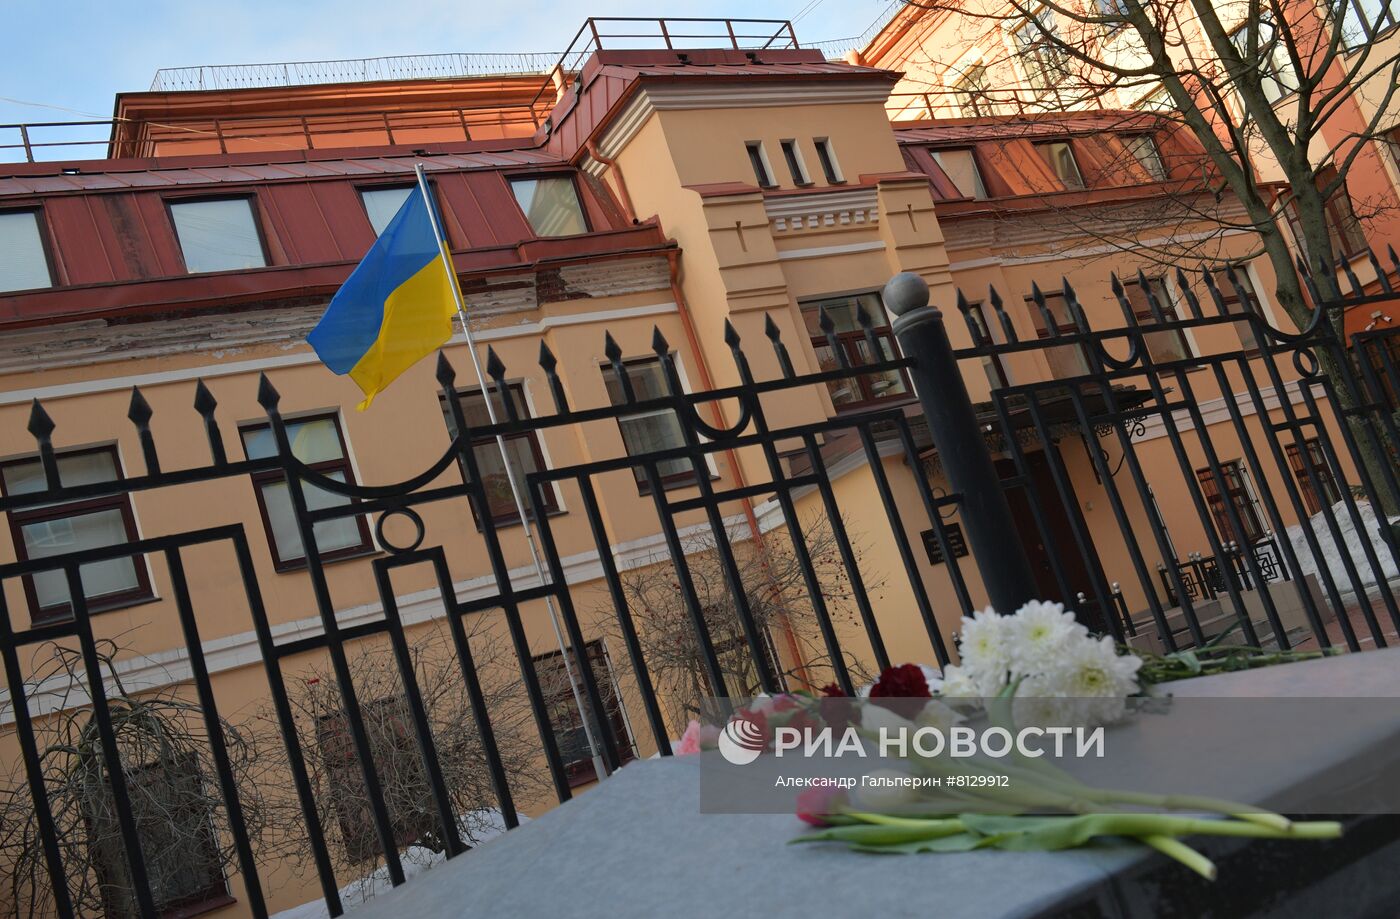 Украинское генконсульство в Петербурге прекратило работу